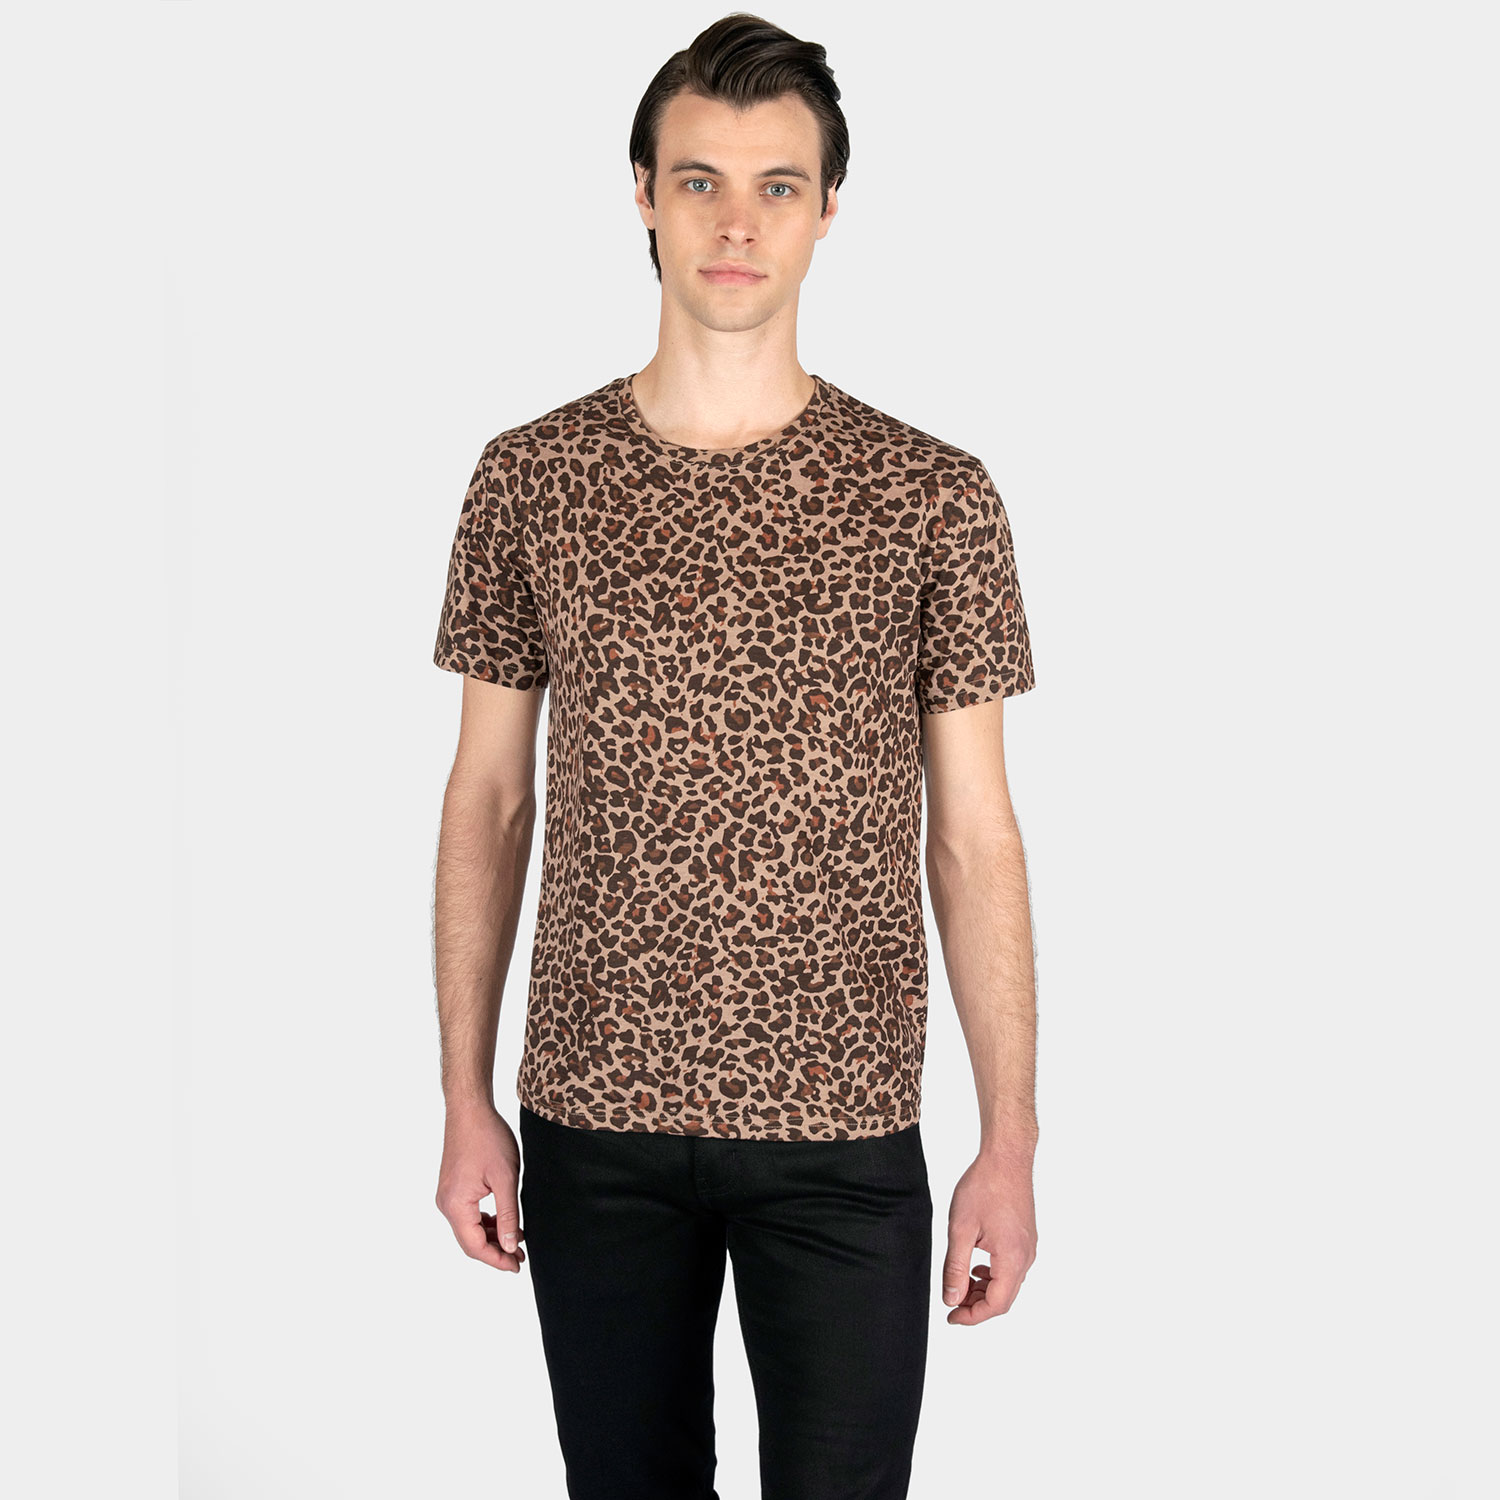 Jax - Leopard Print T-Shirt | Straight To Hell Apparel